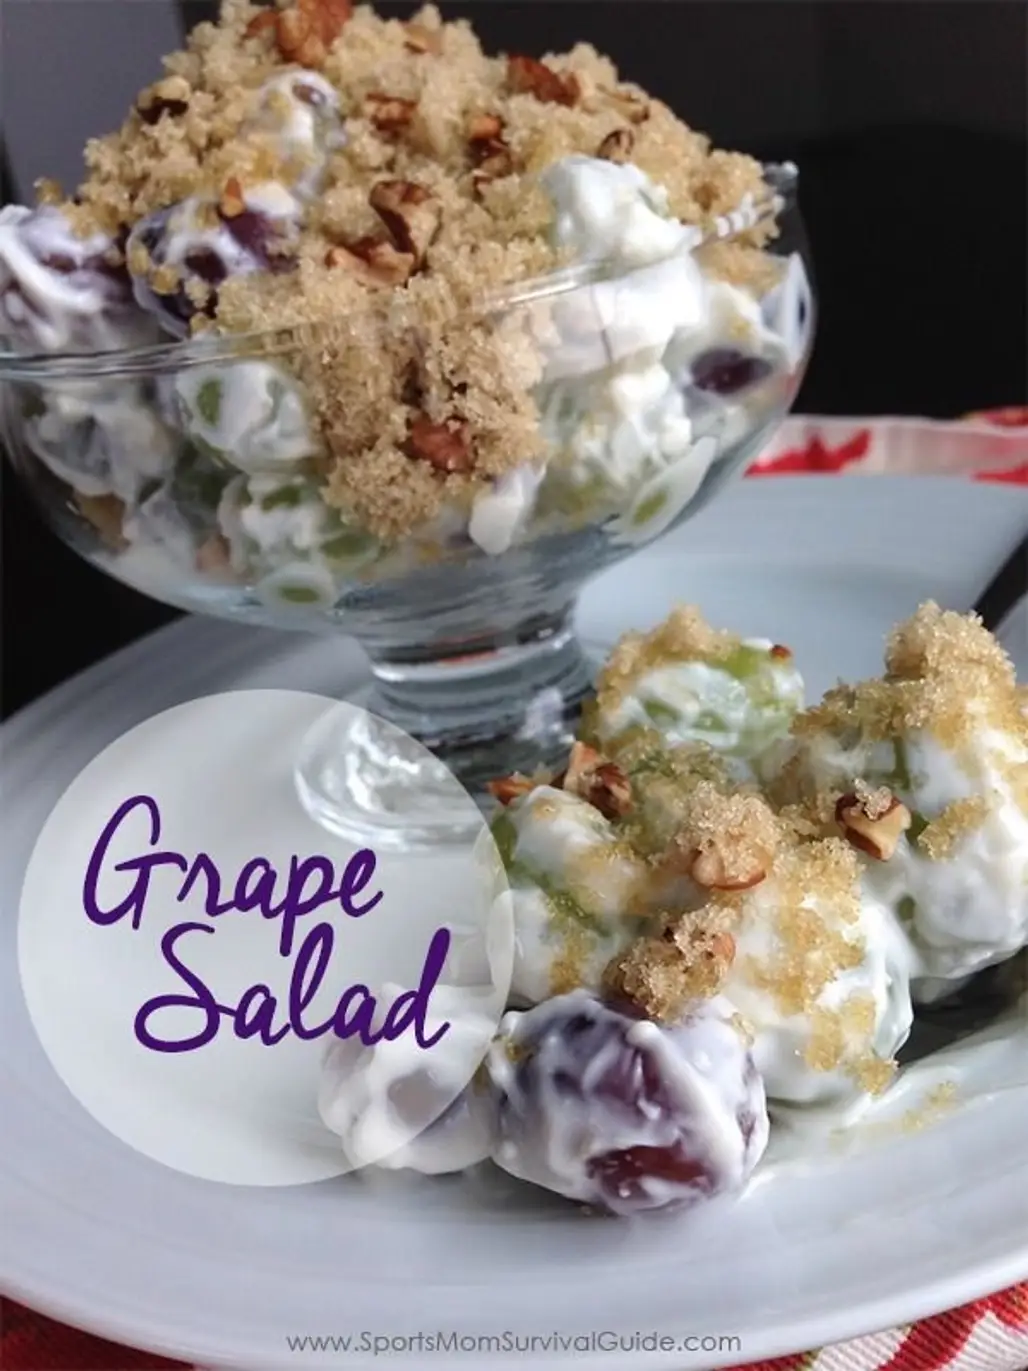 Grape Salad